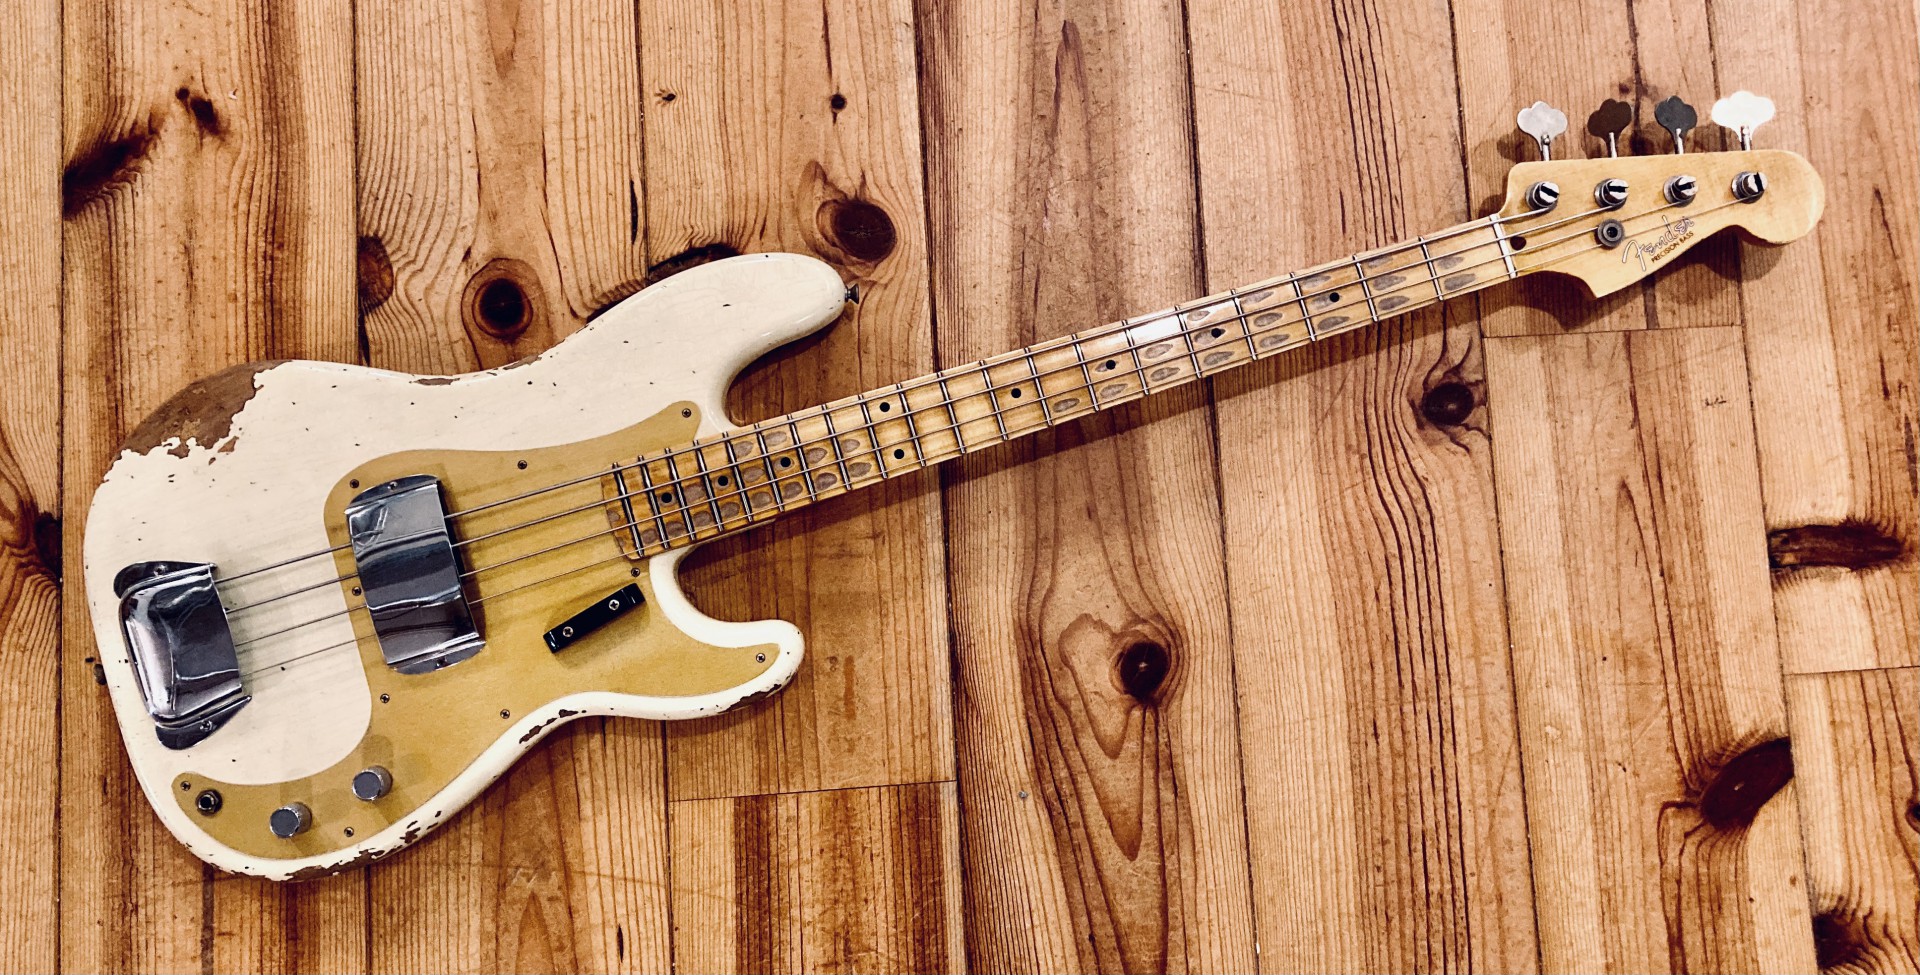 Fender - CS 58 P bass heavy relic